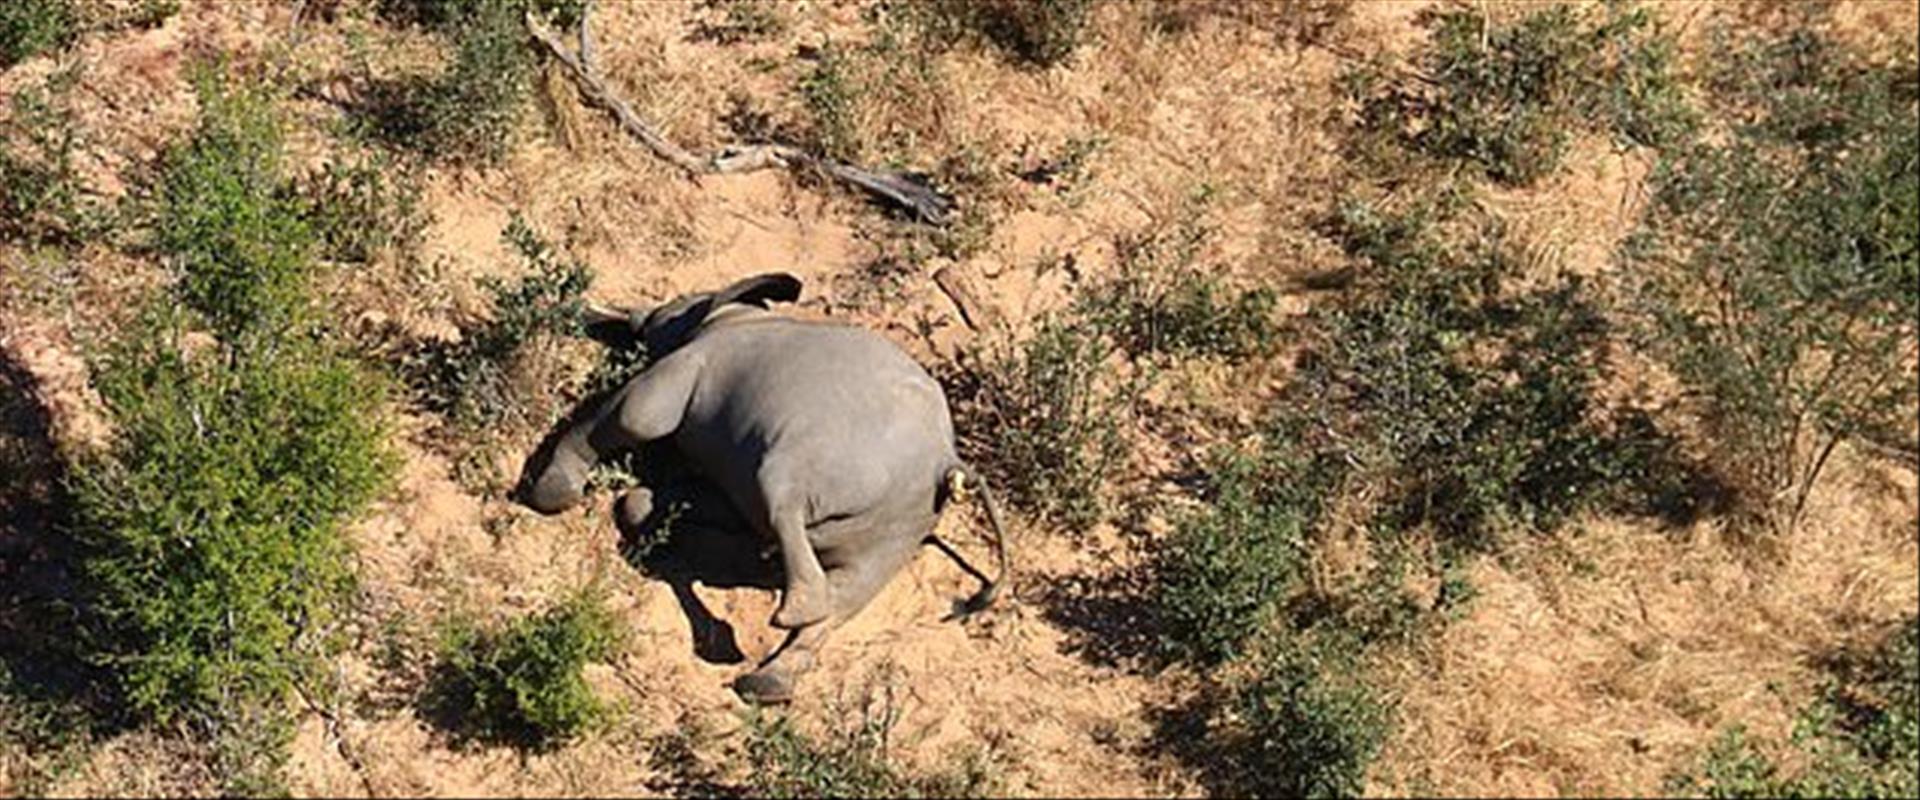 אחד מהפילים שנמצאו מתים בבוטסואנה